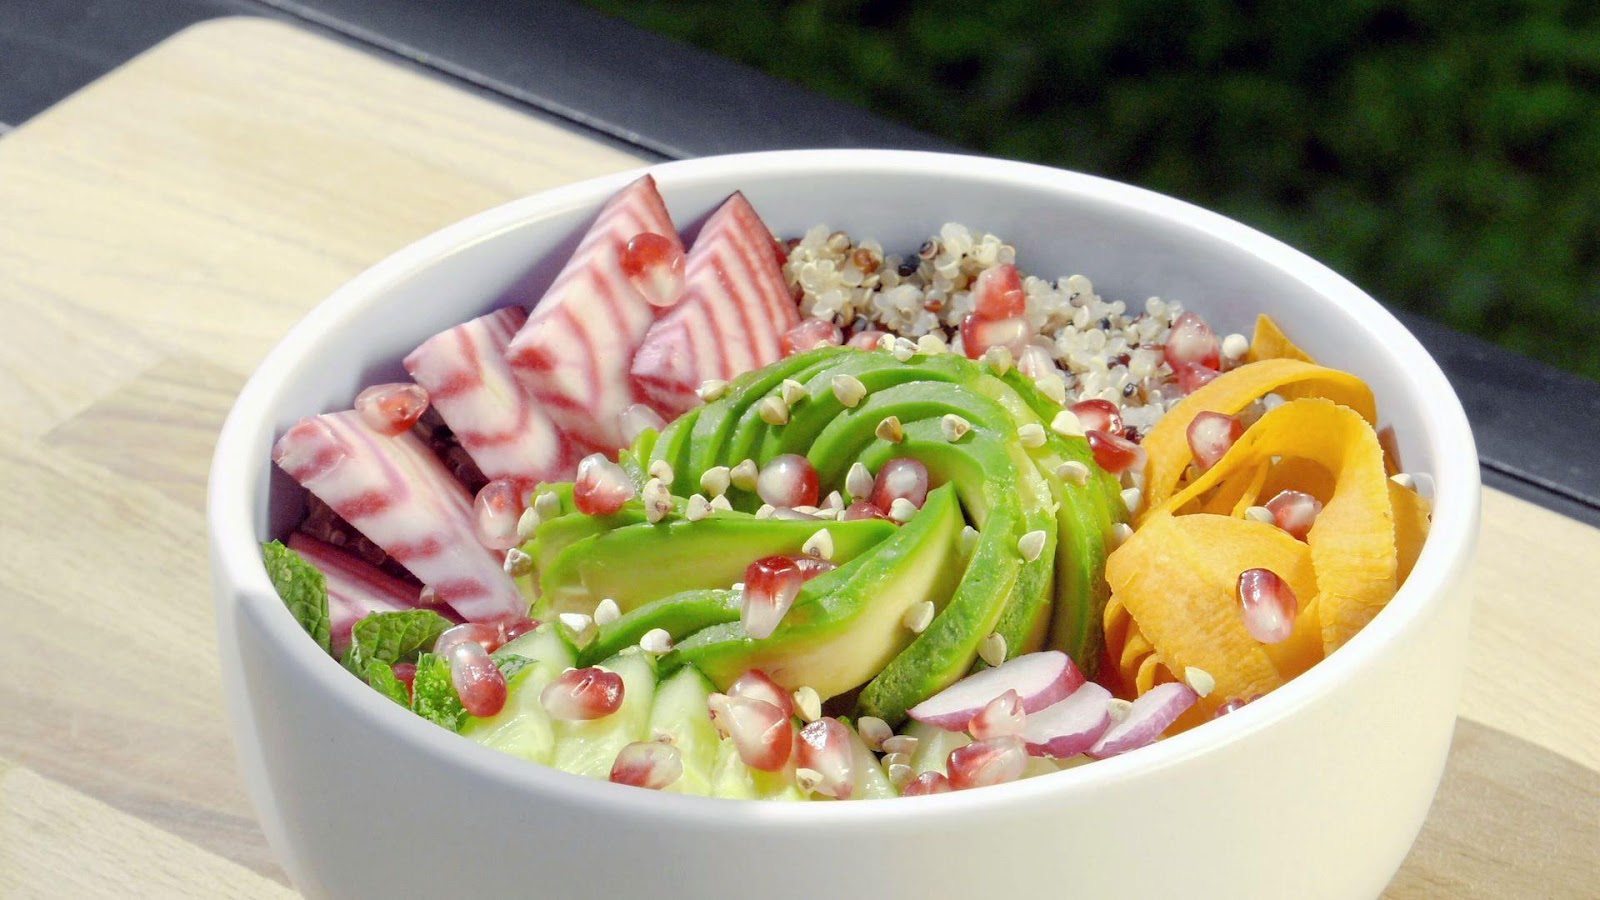 Une image contenant salade, nourriture, plat, ingrédient

Description générée automatiquement